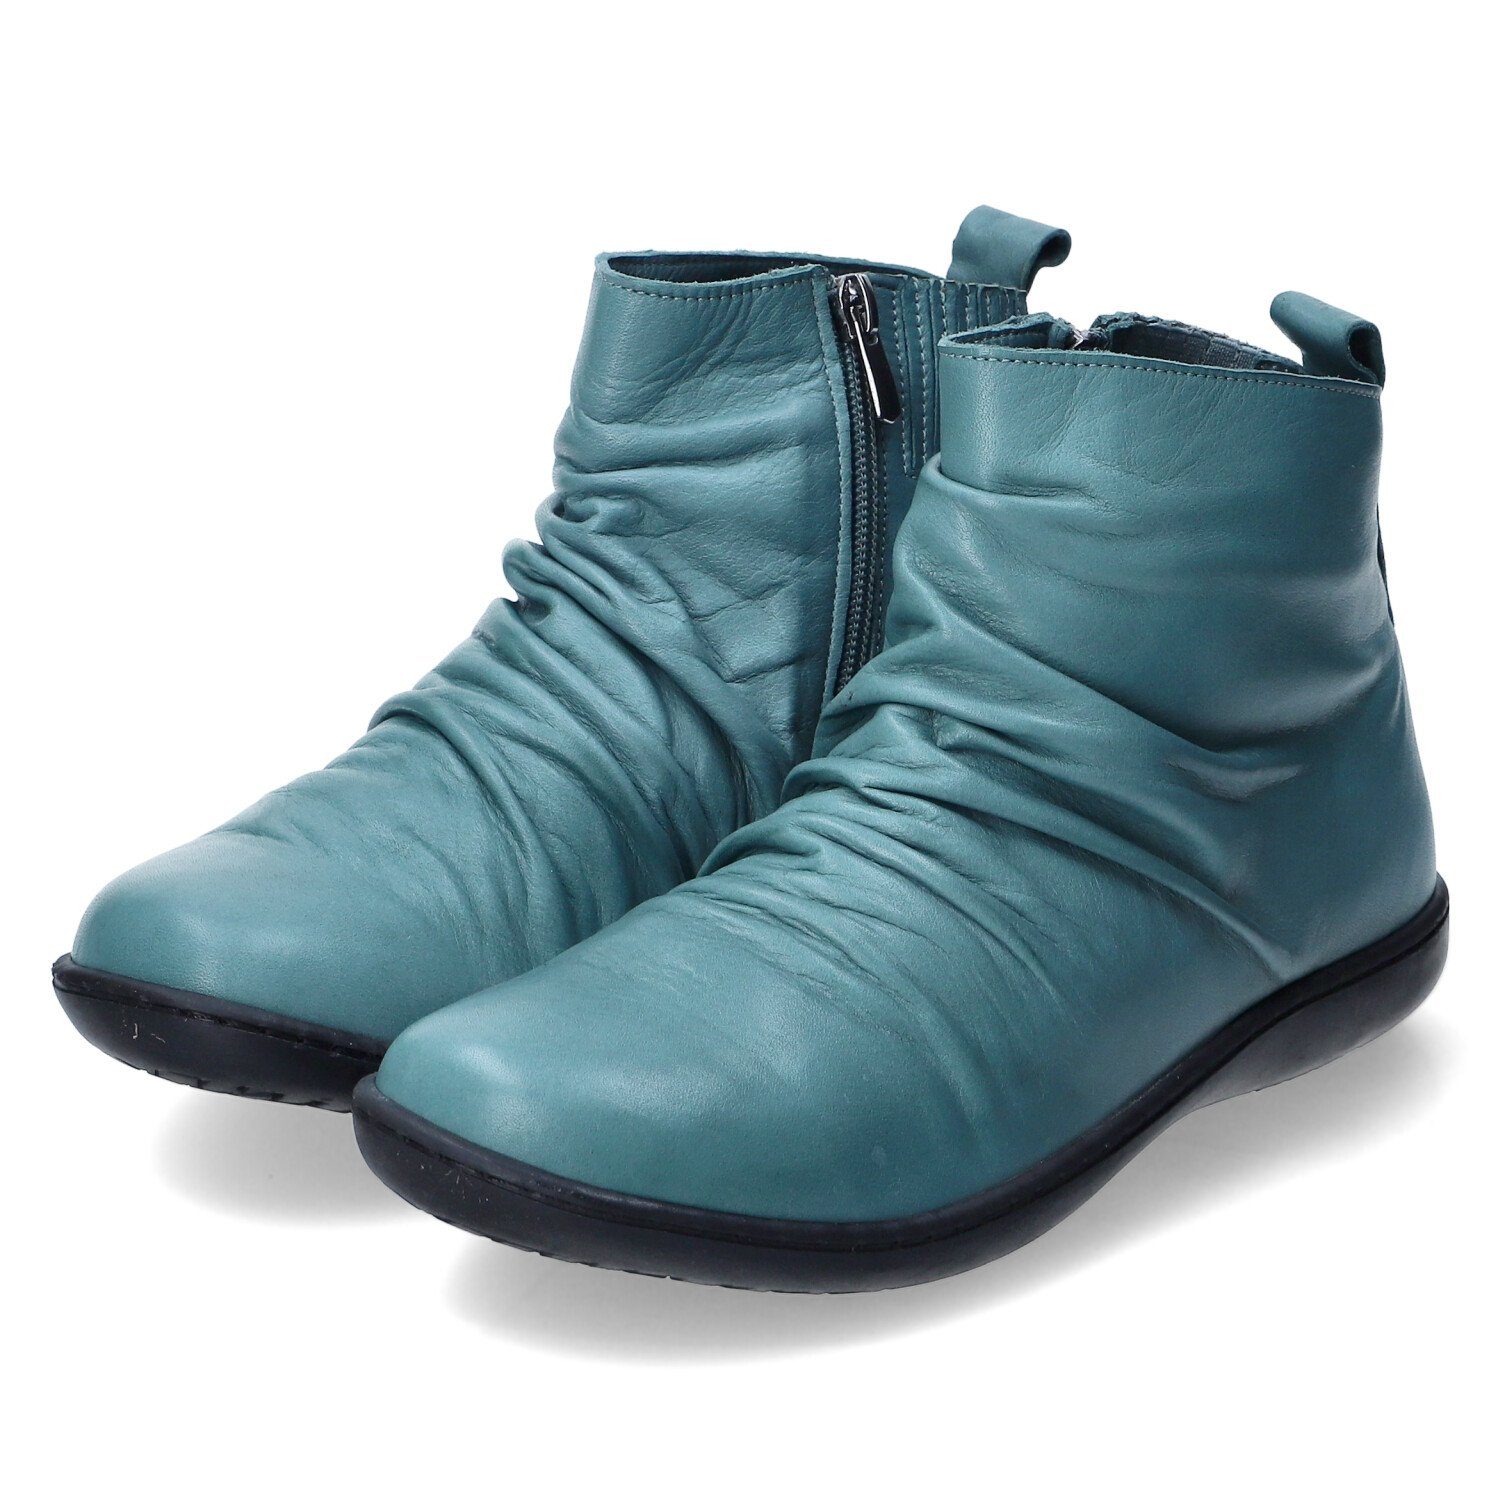 Andrea Conti Schuhe online kaufen | OTTO